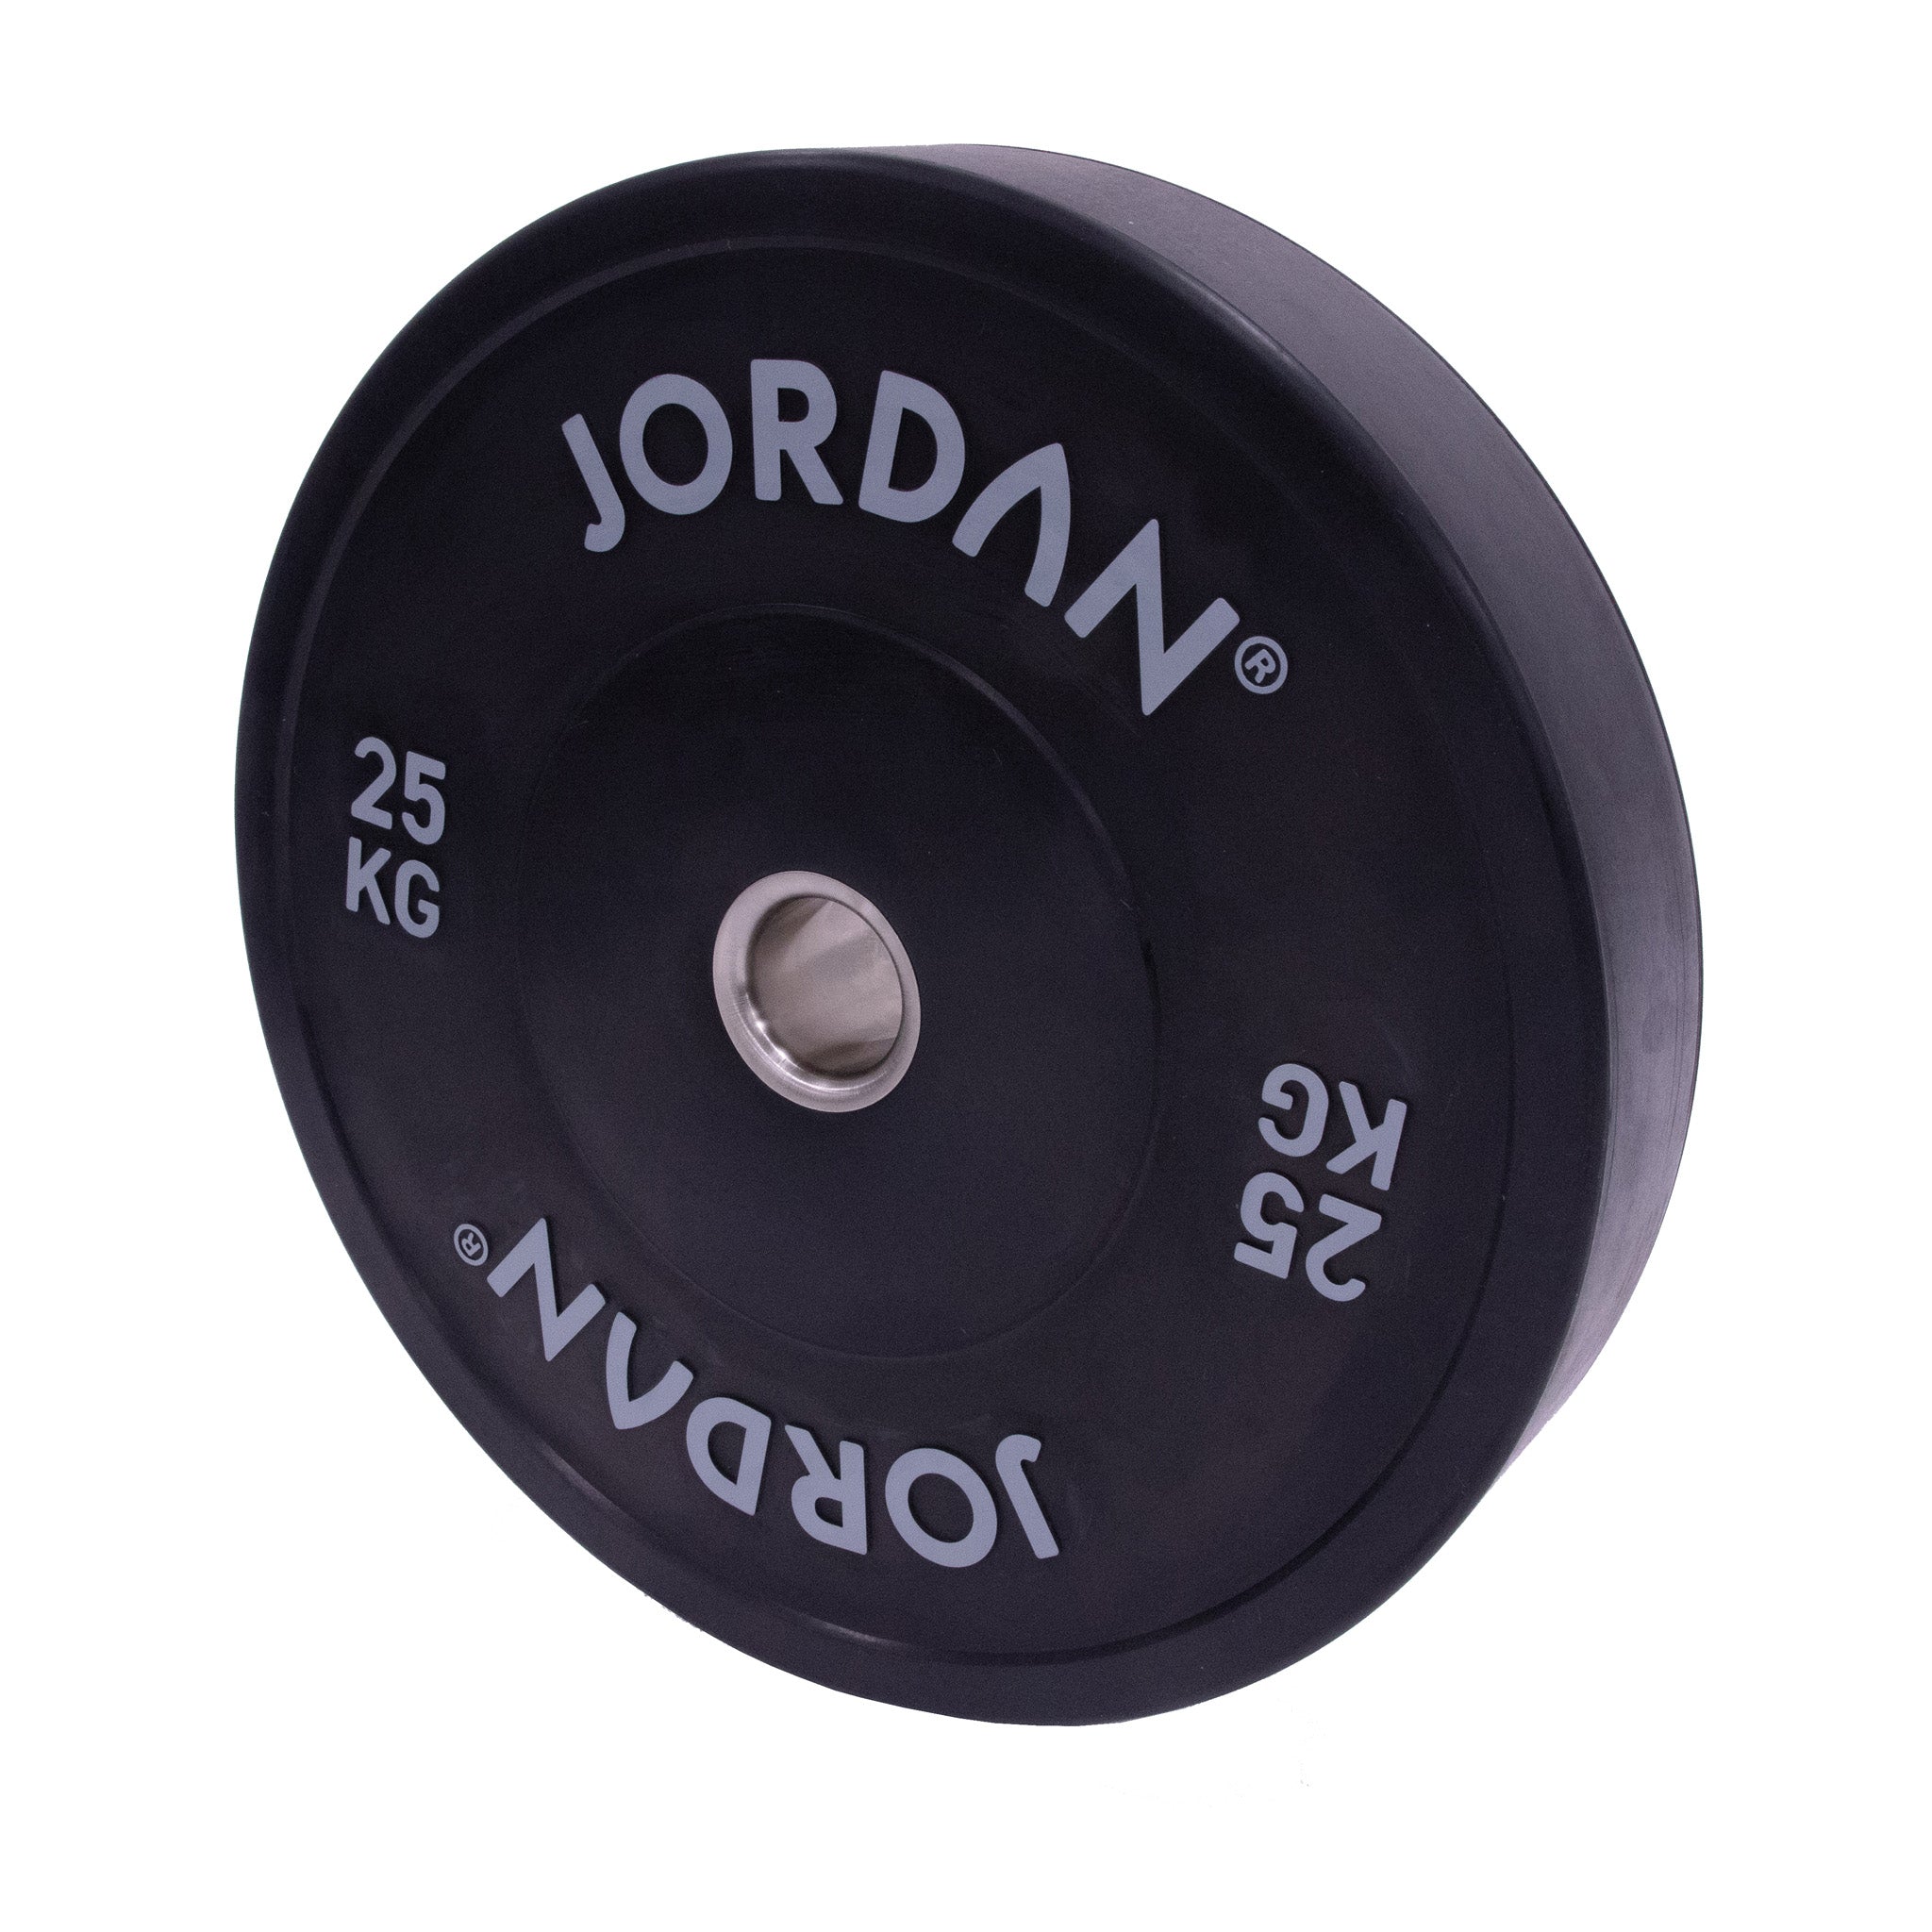 JORDAN HG Black Rubber Bumper Weight Plates